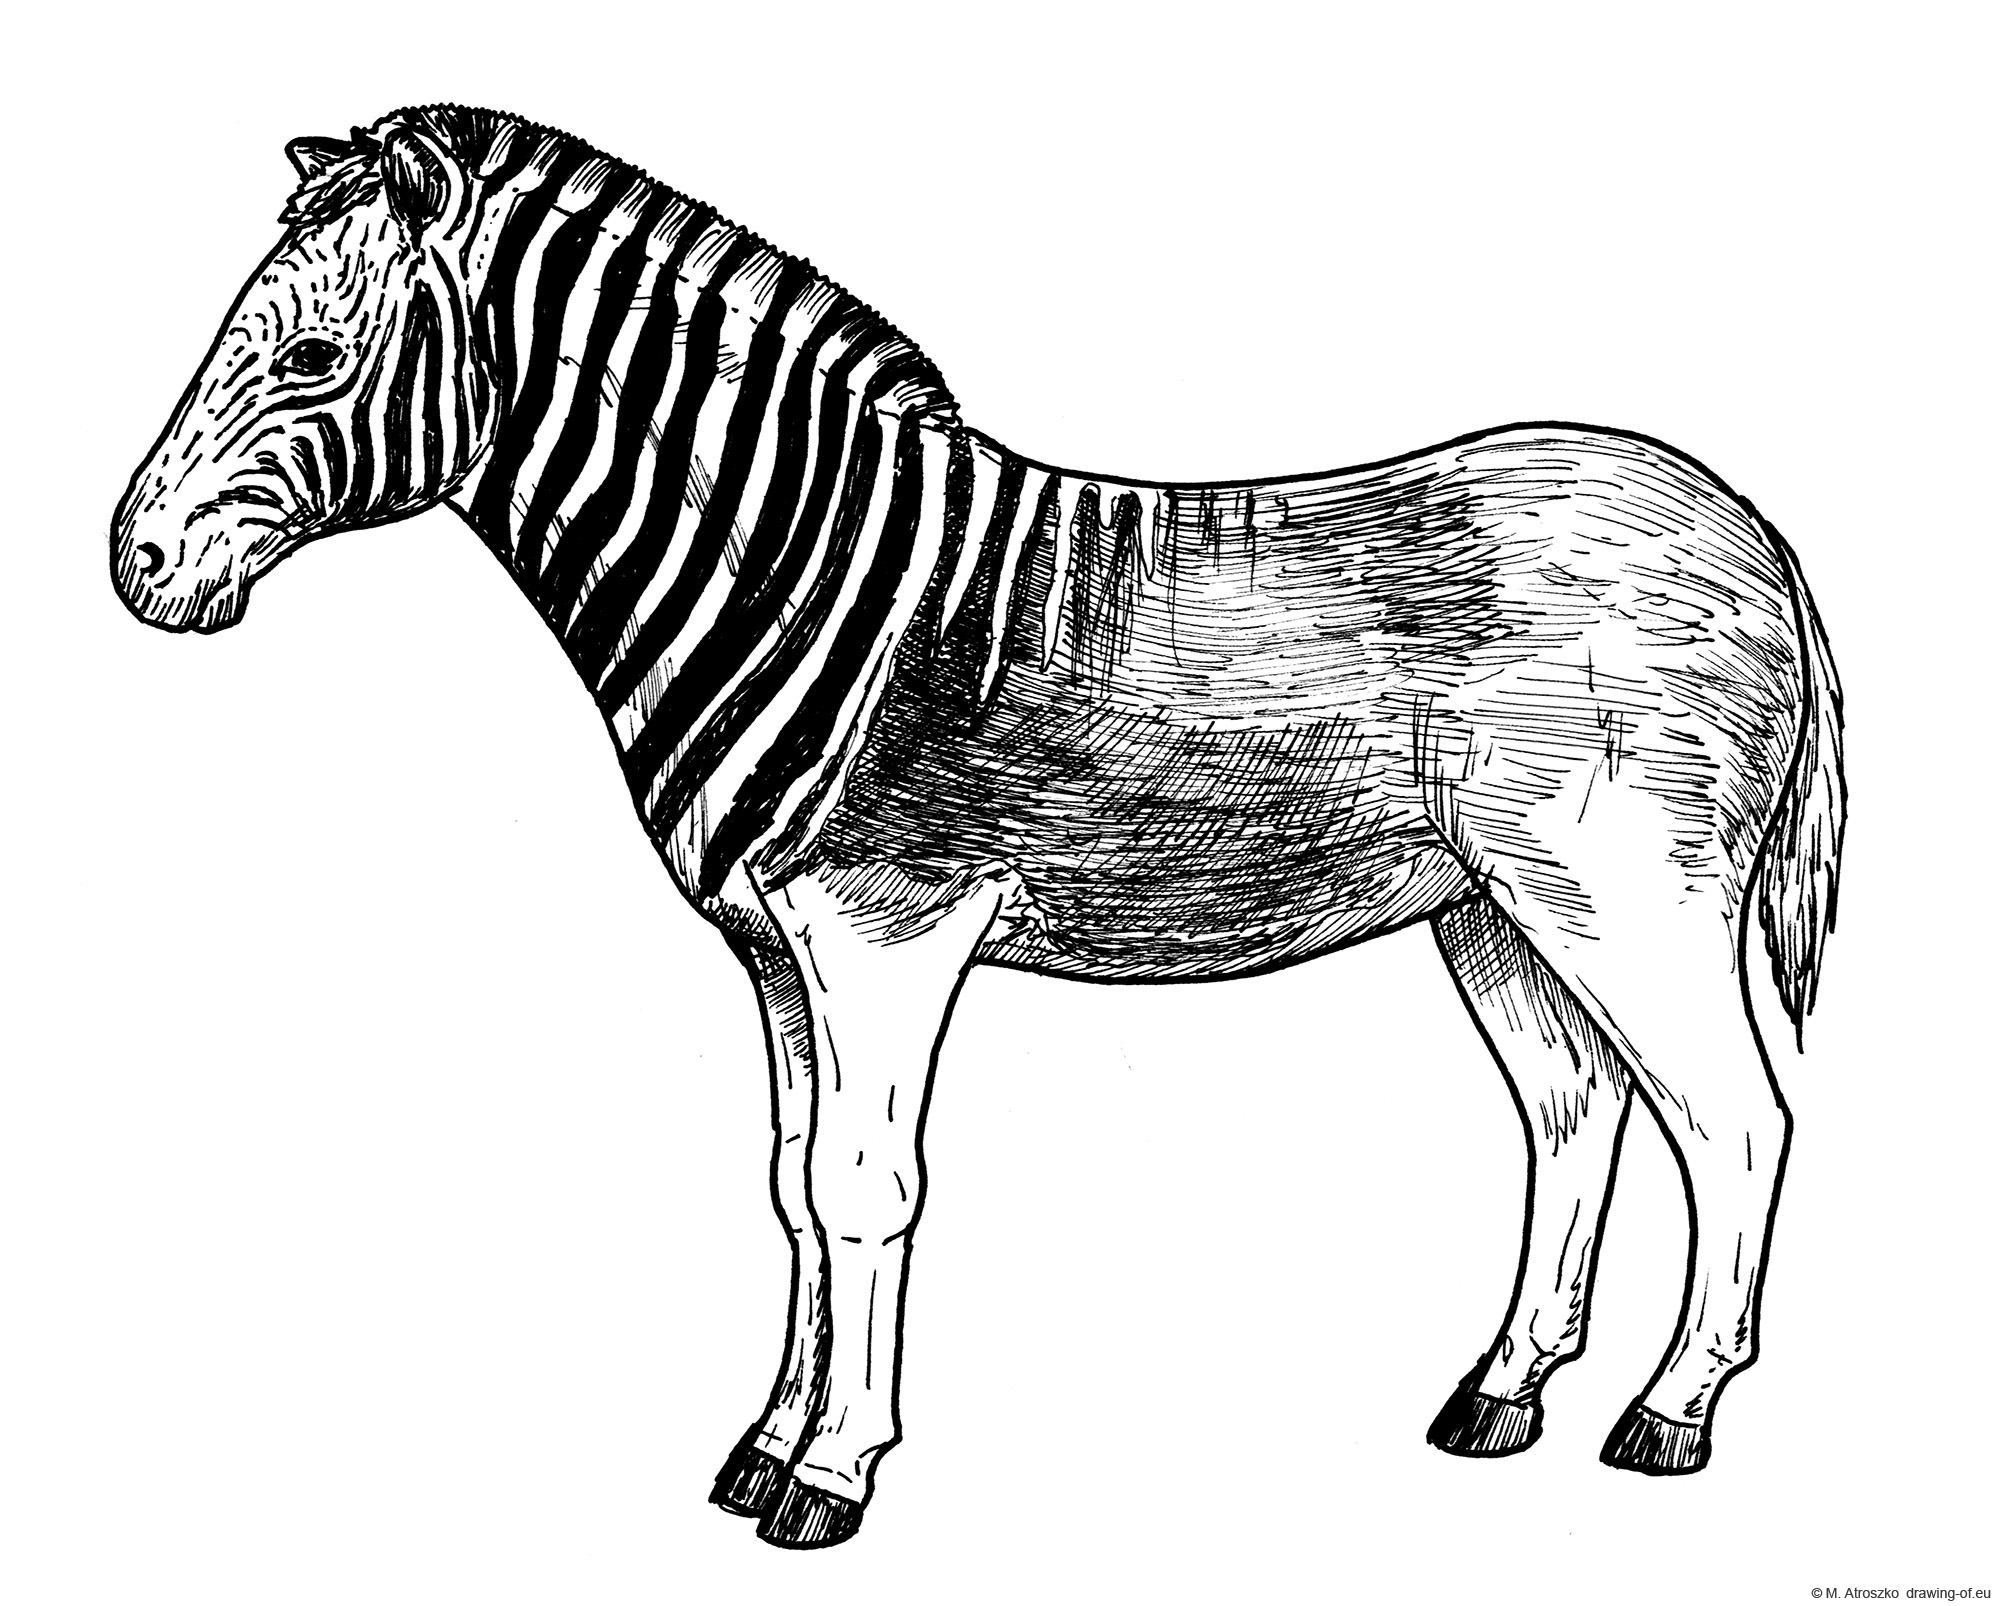 Quagga drawing - extinct zebra